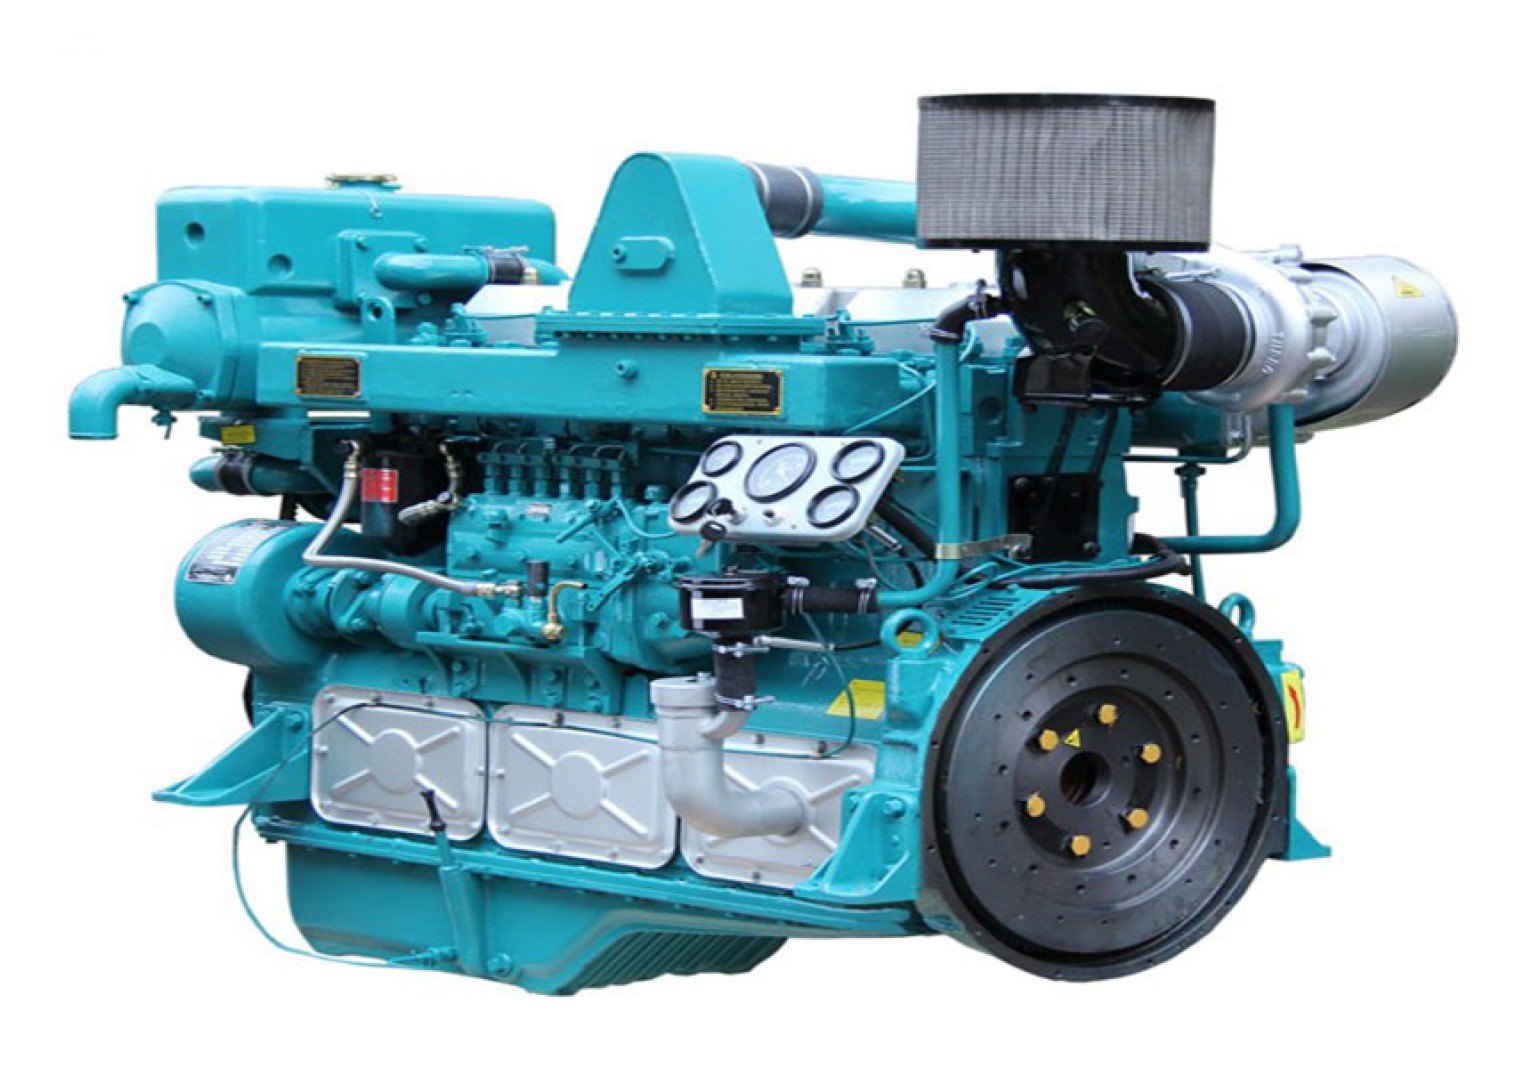 Marine Diesel Engine NT6135ZCzR7